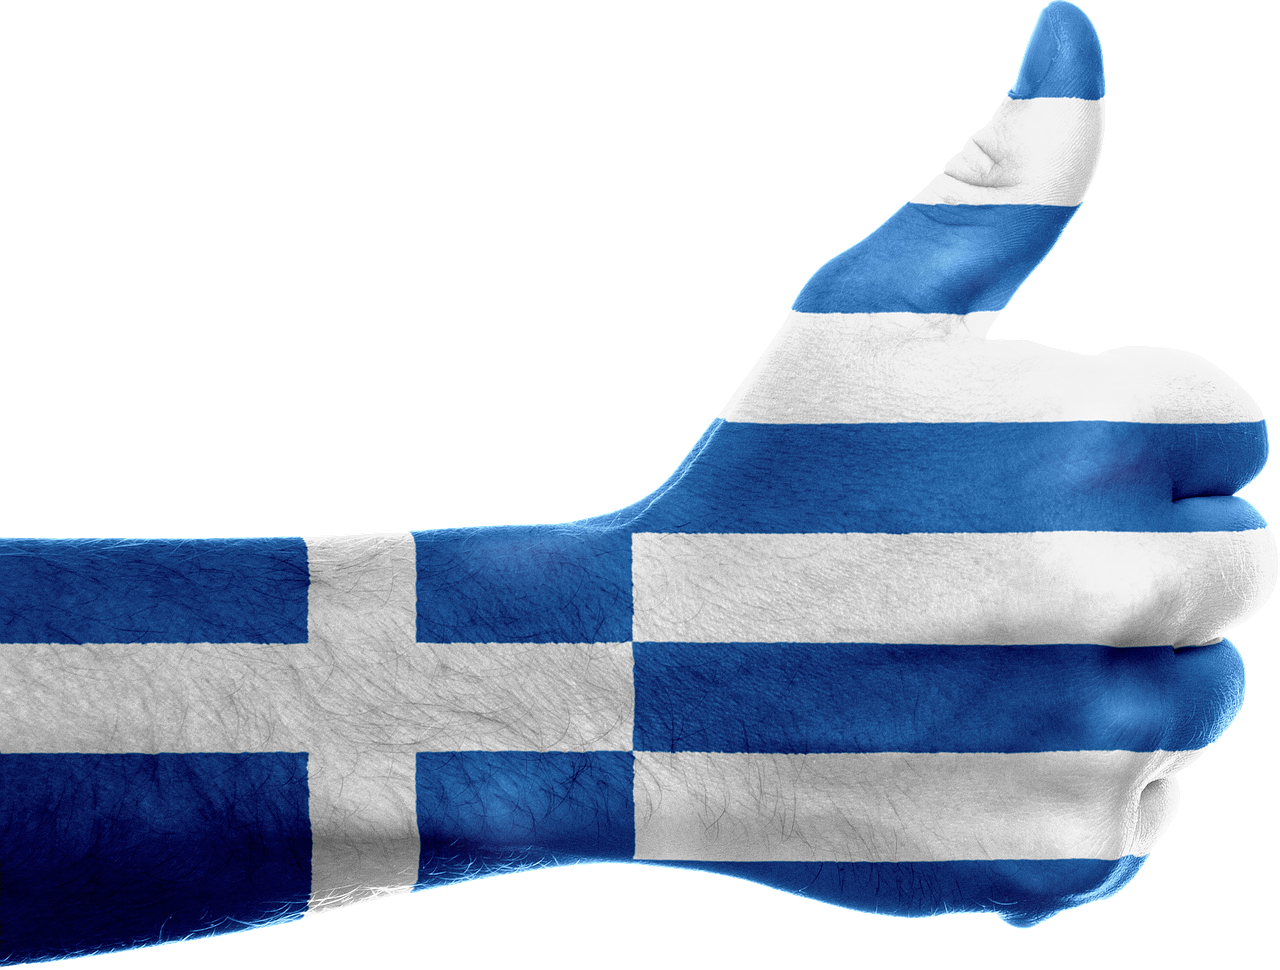 Graikija, Vėliava, Ranka, Nacionalinis, Pirštai, Patriotinis, Patriotizmas, Graikų Kalba, Europietis, Gestas